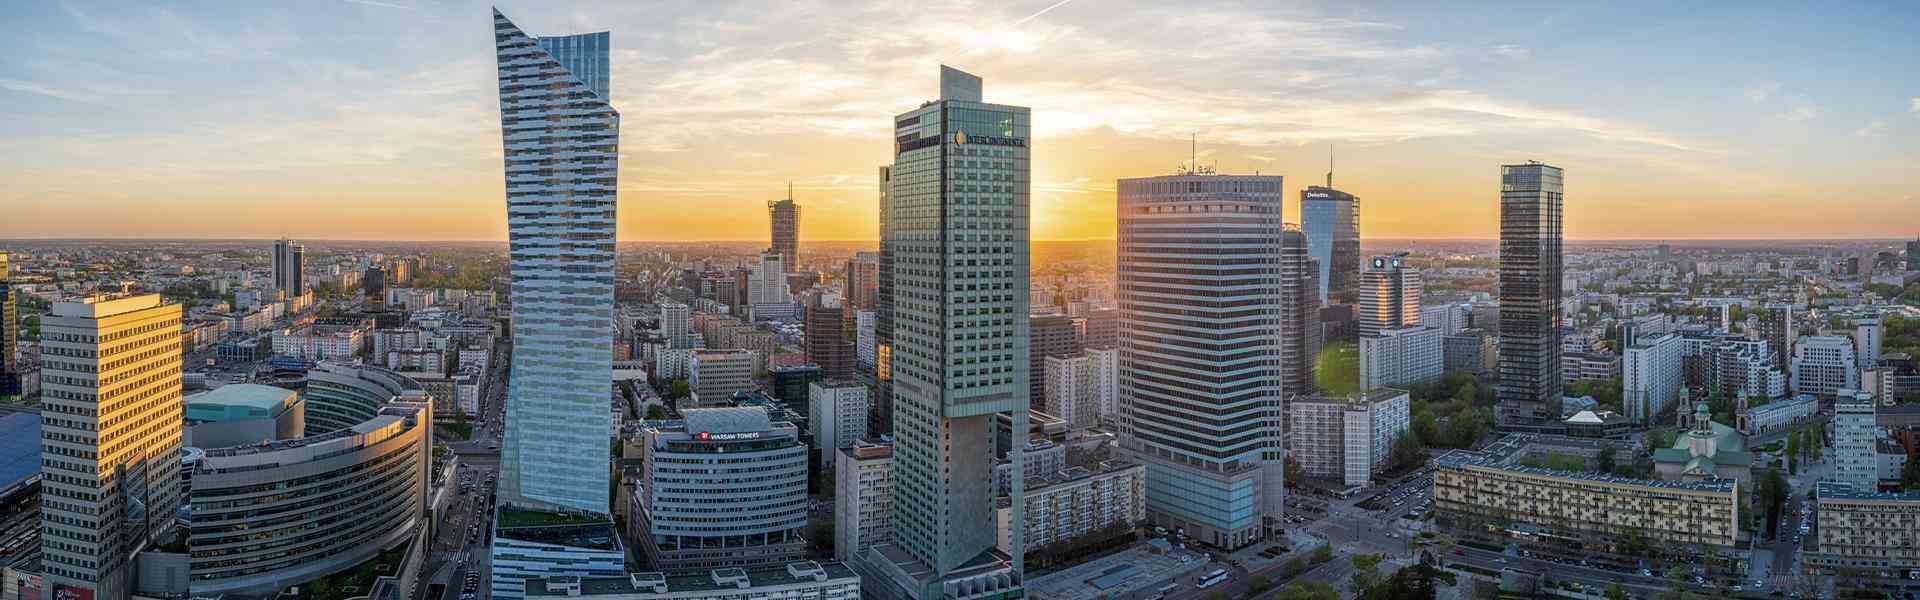 Slajd #1 Panorama Warszawy